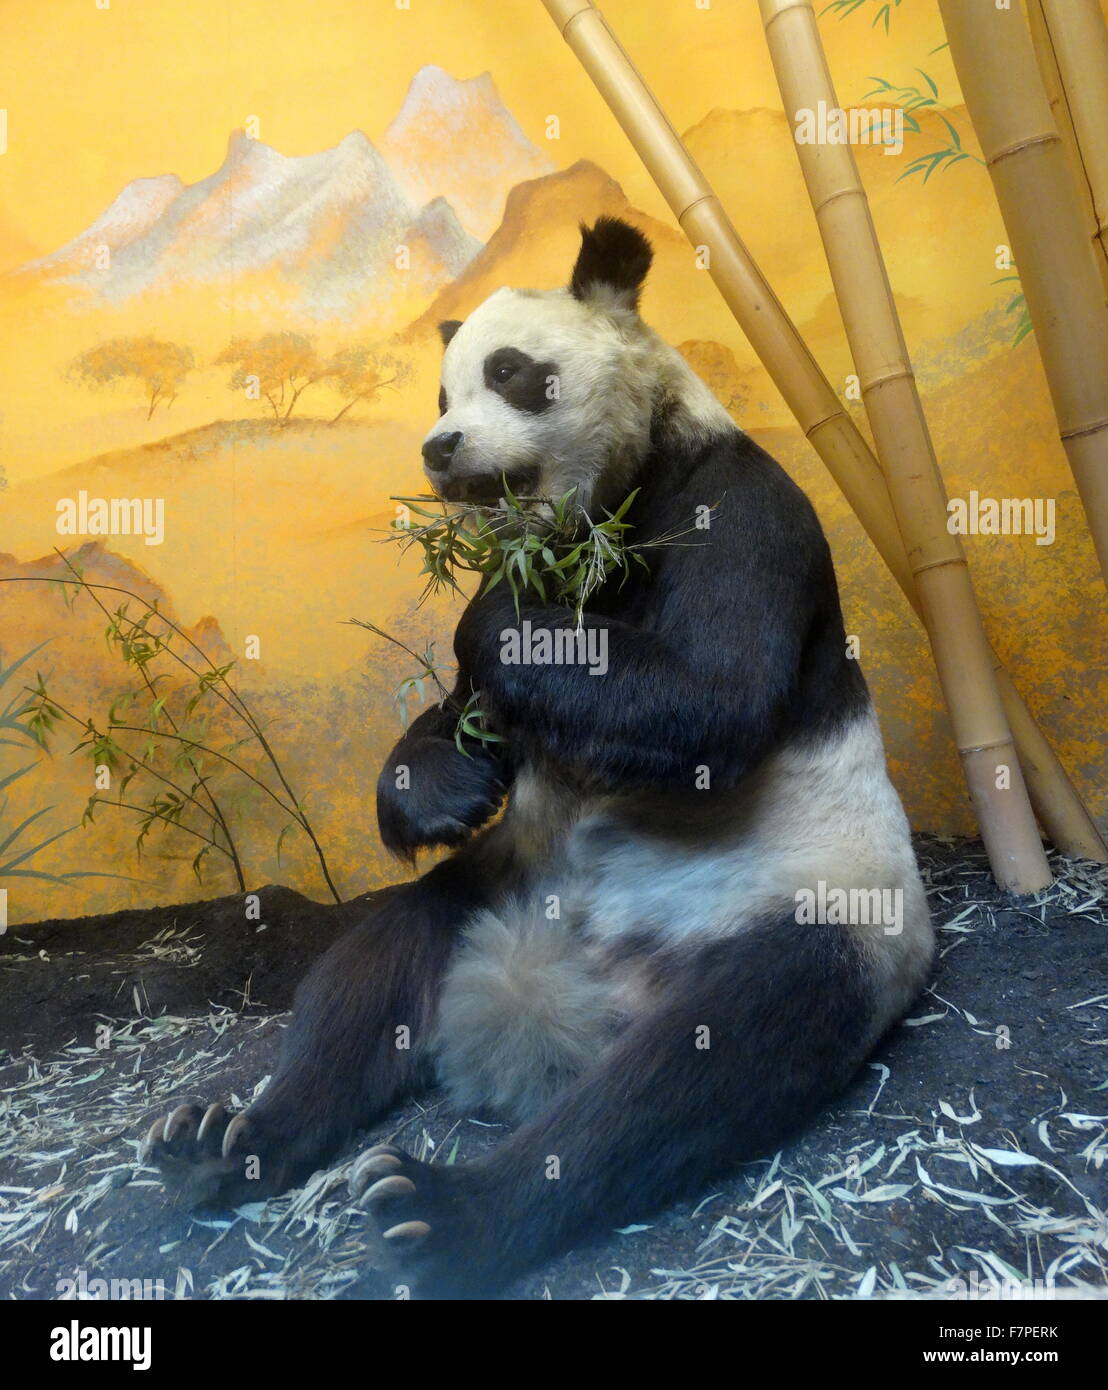 Farcis et conservé des vestiges de Chi Chi le Panda doué par la Chine au Royaume-Uni. Daté 1958 Banque D'Images